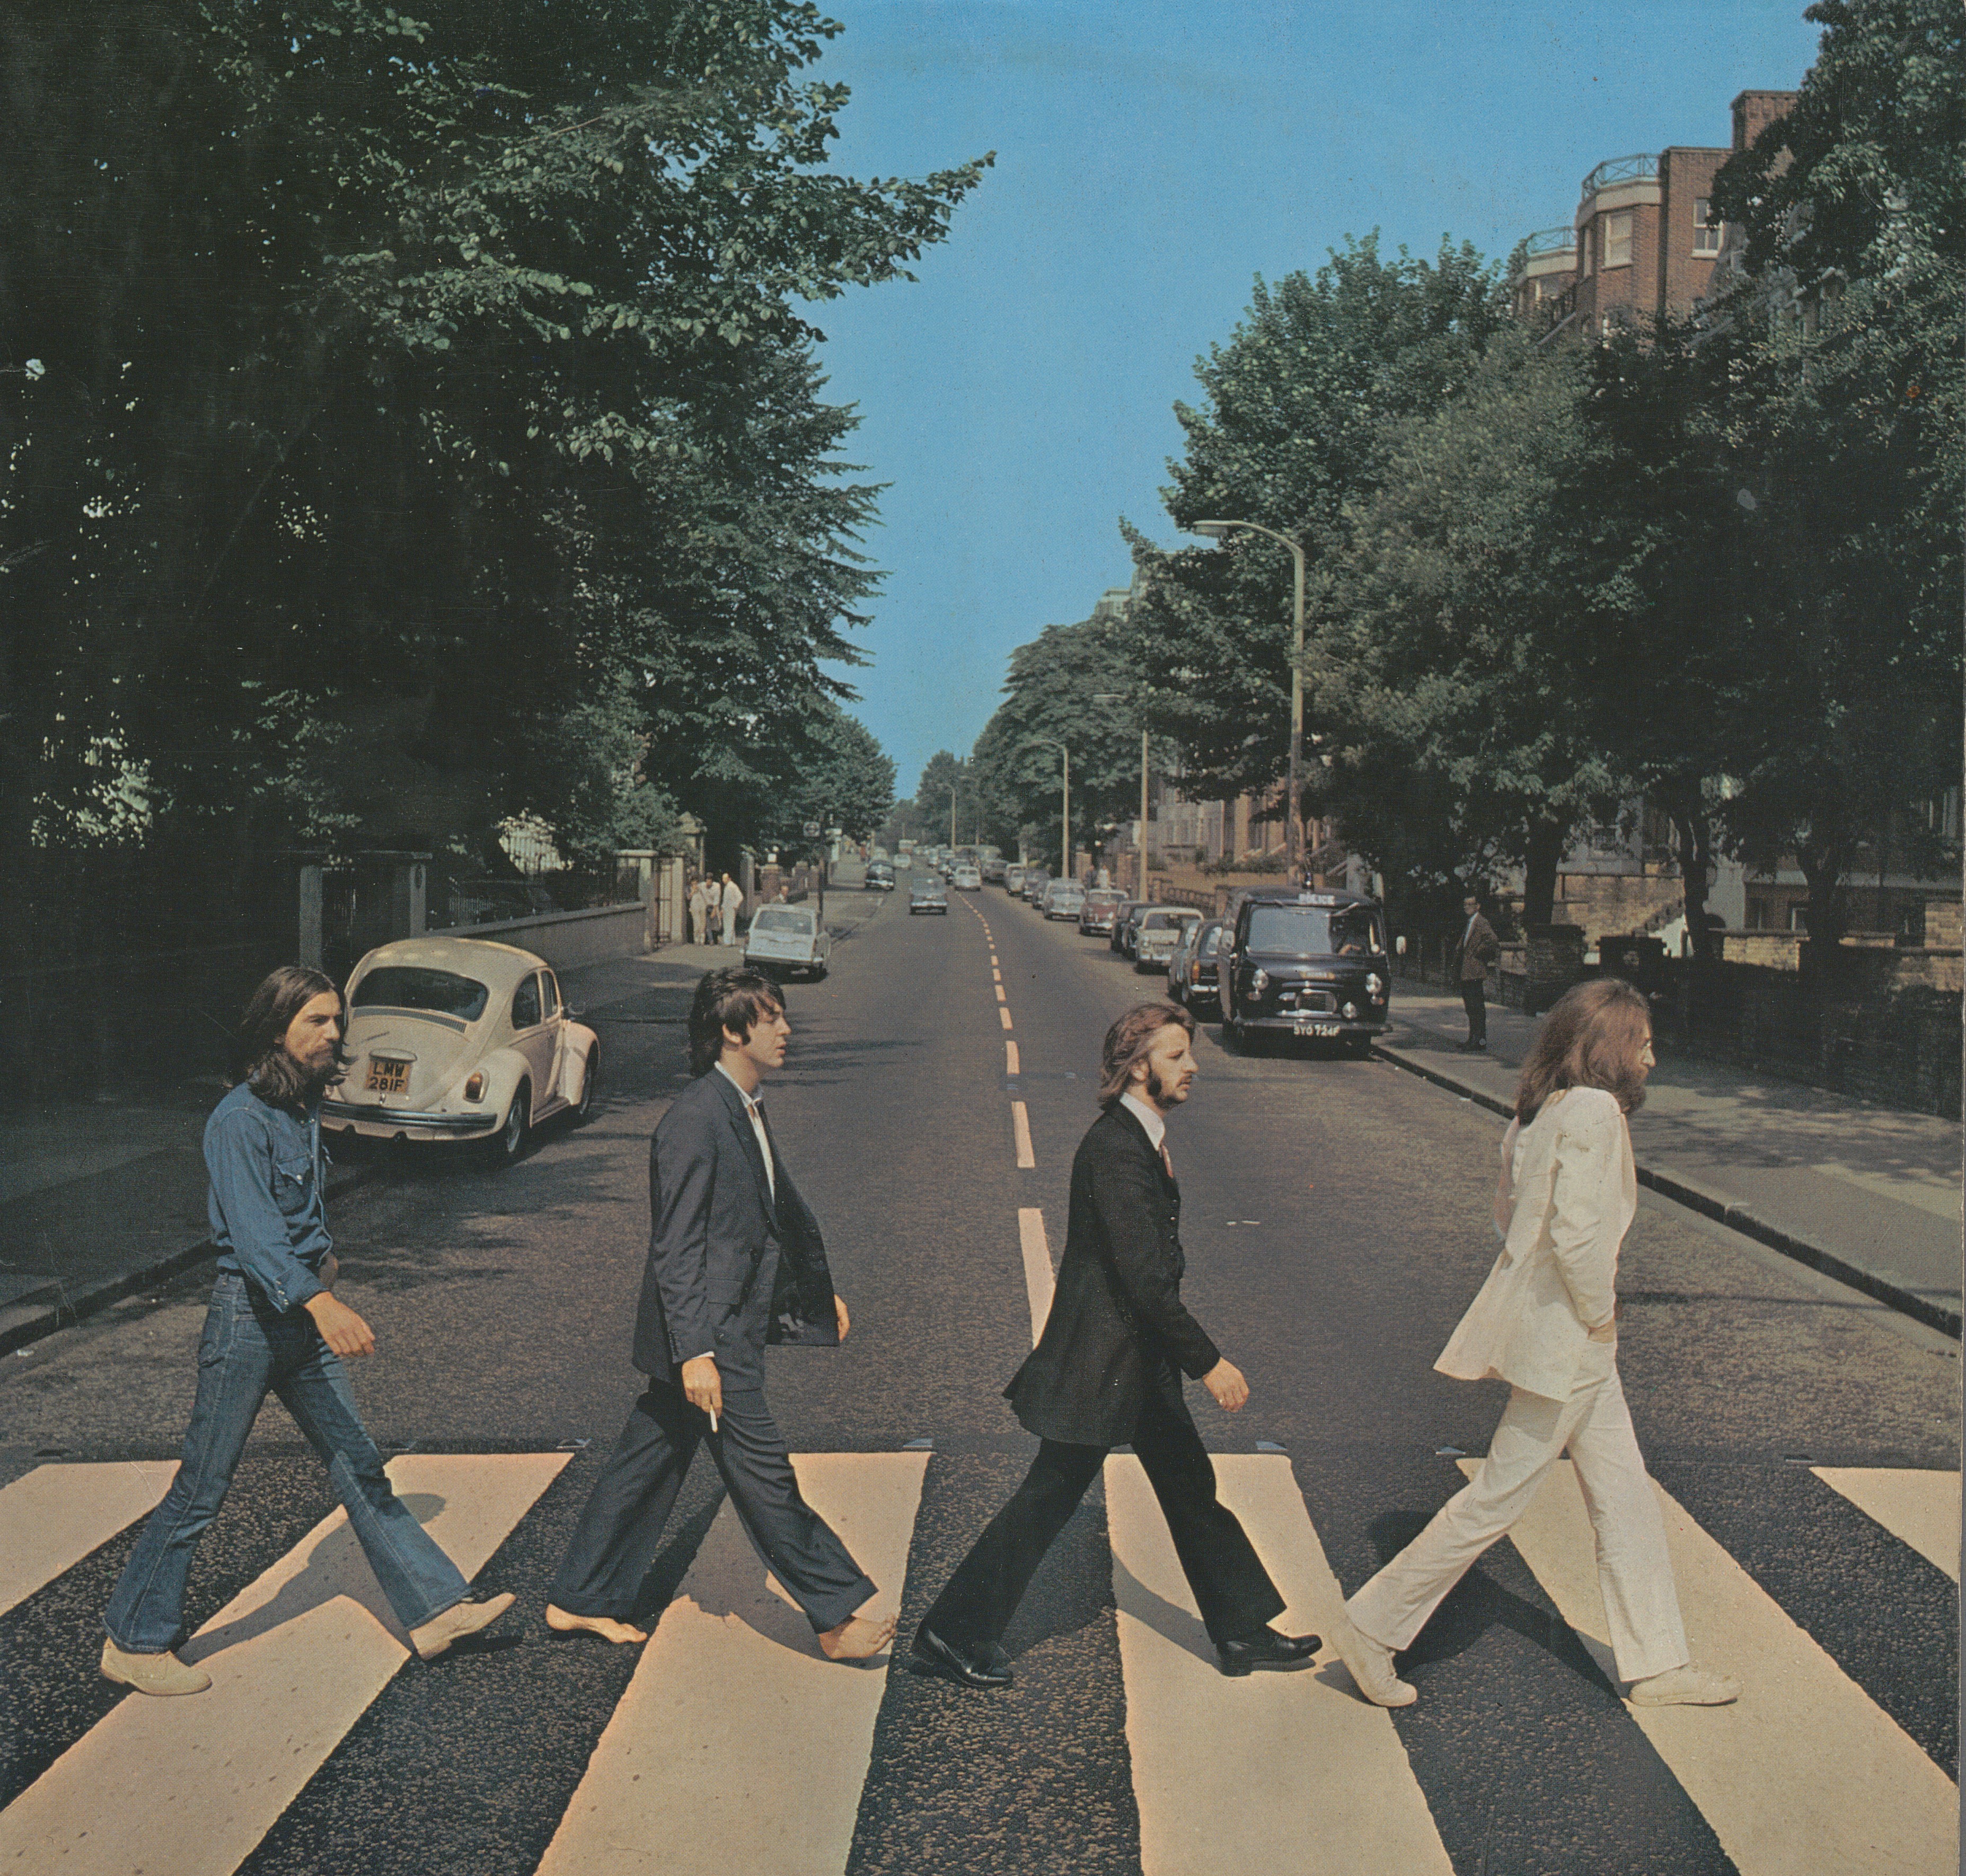 John Lennon, Ringo Starr, Paul McCartney och George Harrison går på ett övergångsställe. Paul barfota. Bilar står parkerade under grönskande träd.